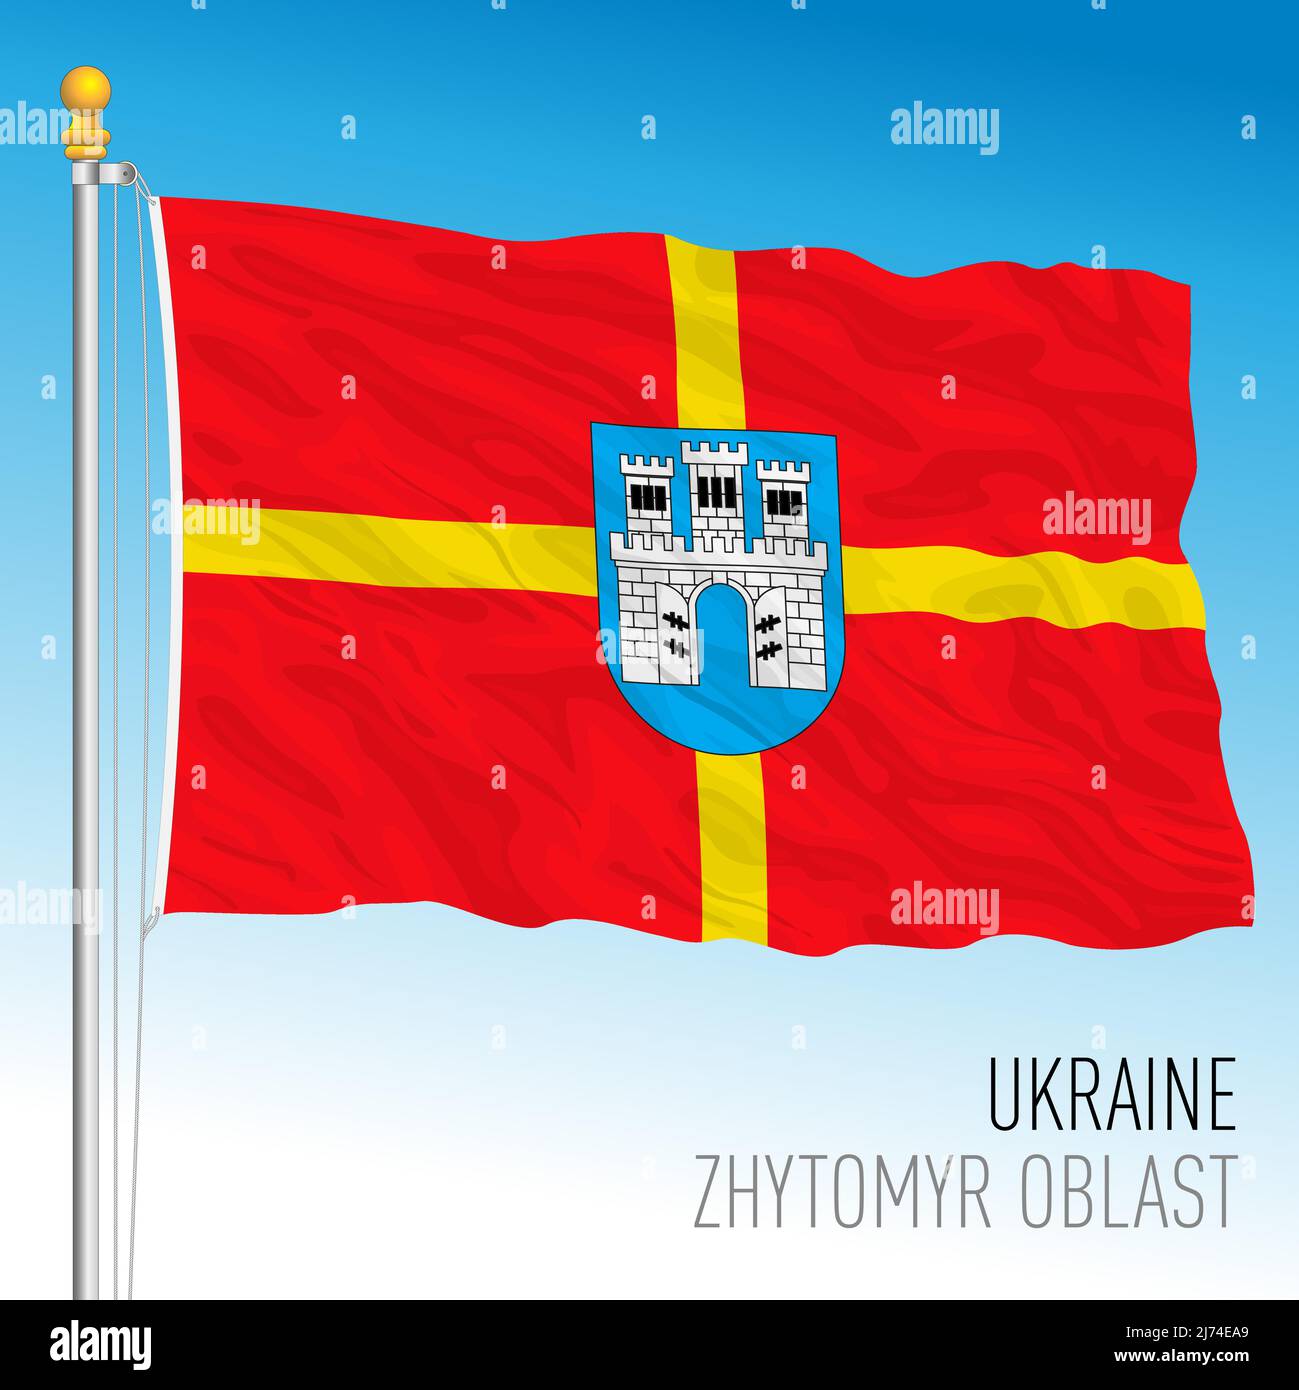 Ukraine, Zhytomyr Oblast flag, vector illustration Stock Vector